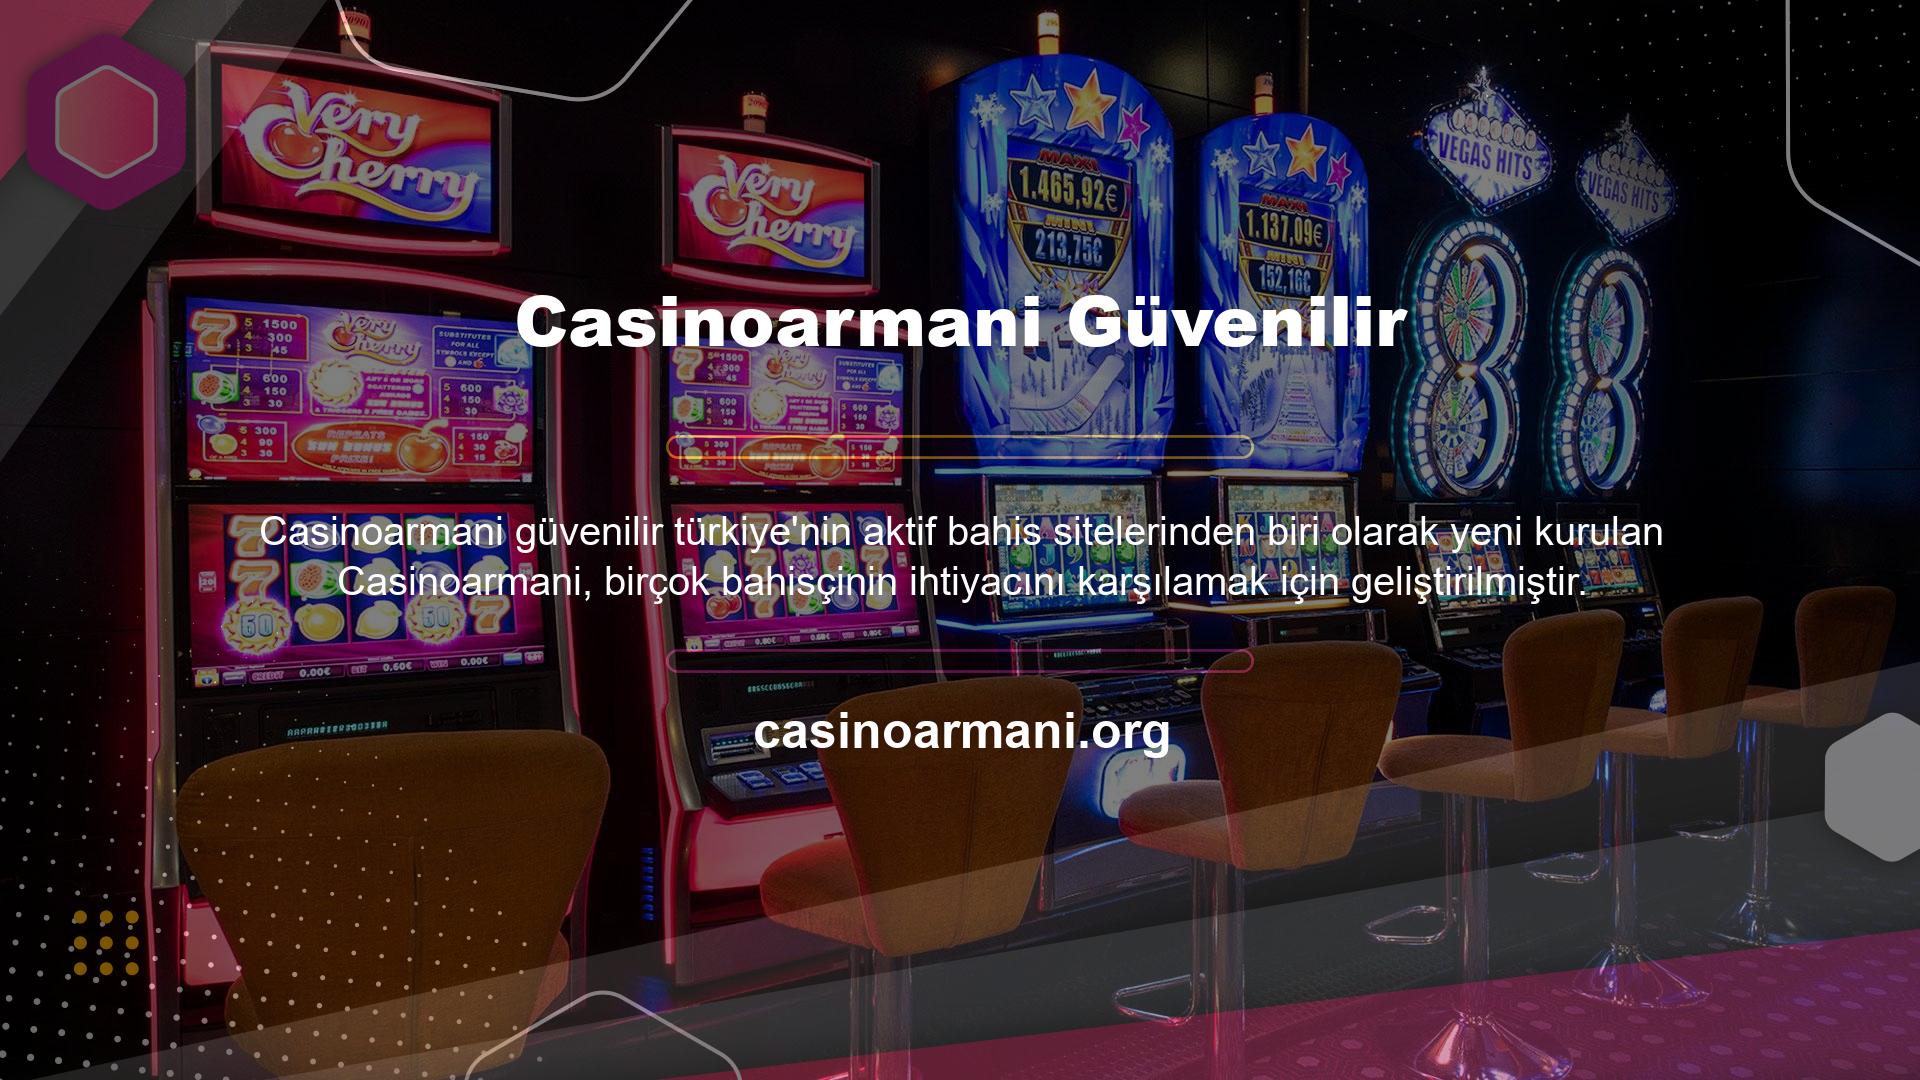 Genel olarak Casinoarmani adından da anlaşılacağı gibi tüm yatırım ve ödeme seçeneklerini sunmaktadır